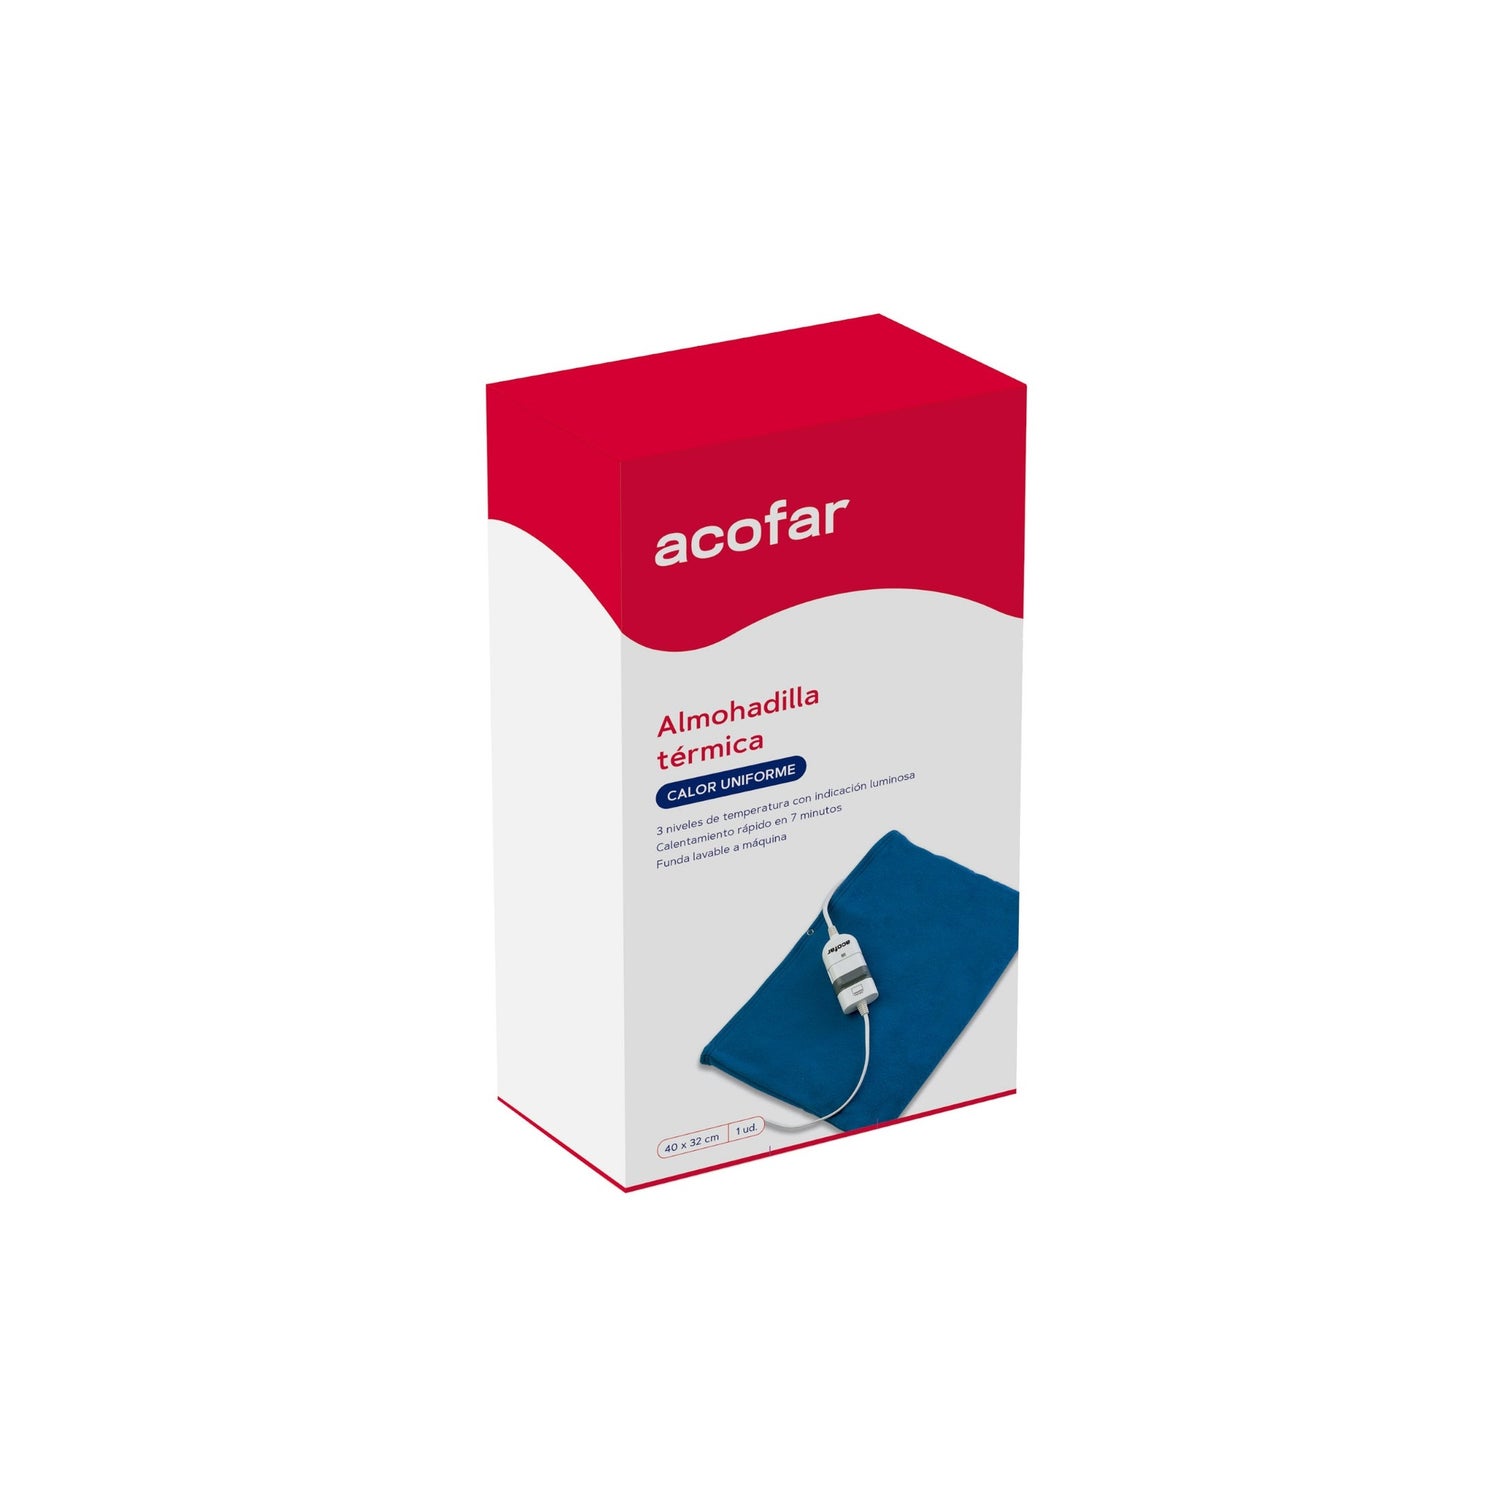 Almohadilla eléctrica confort lumbar de farmacia Acofar - ACOFARMA